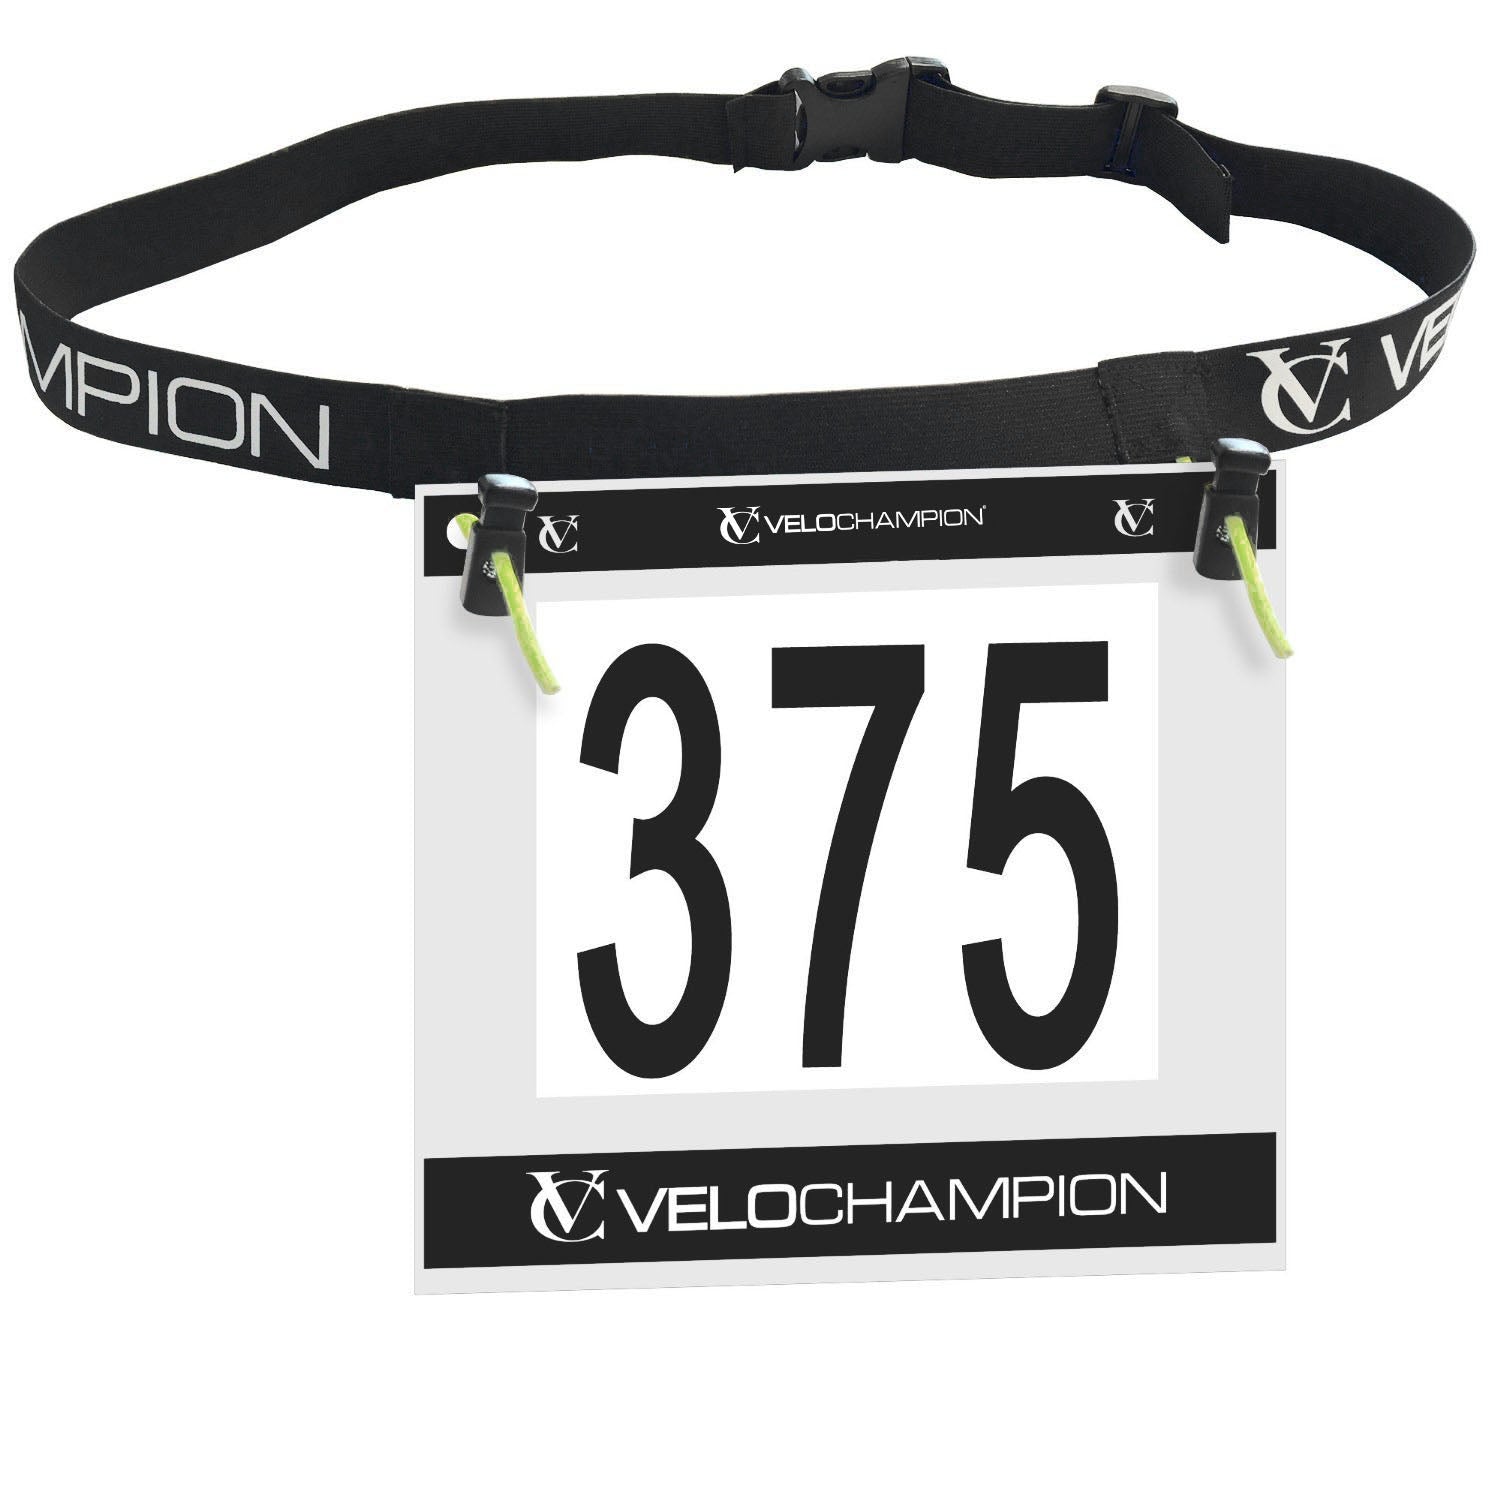 VeloChampion Triathlon / Running Race Number Belt - Fully Adjustable